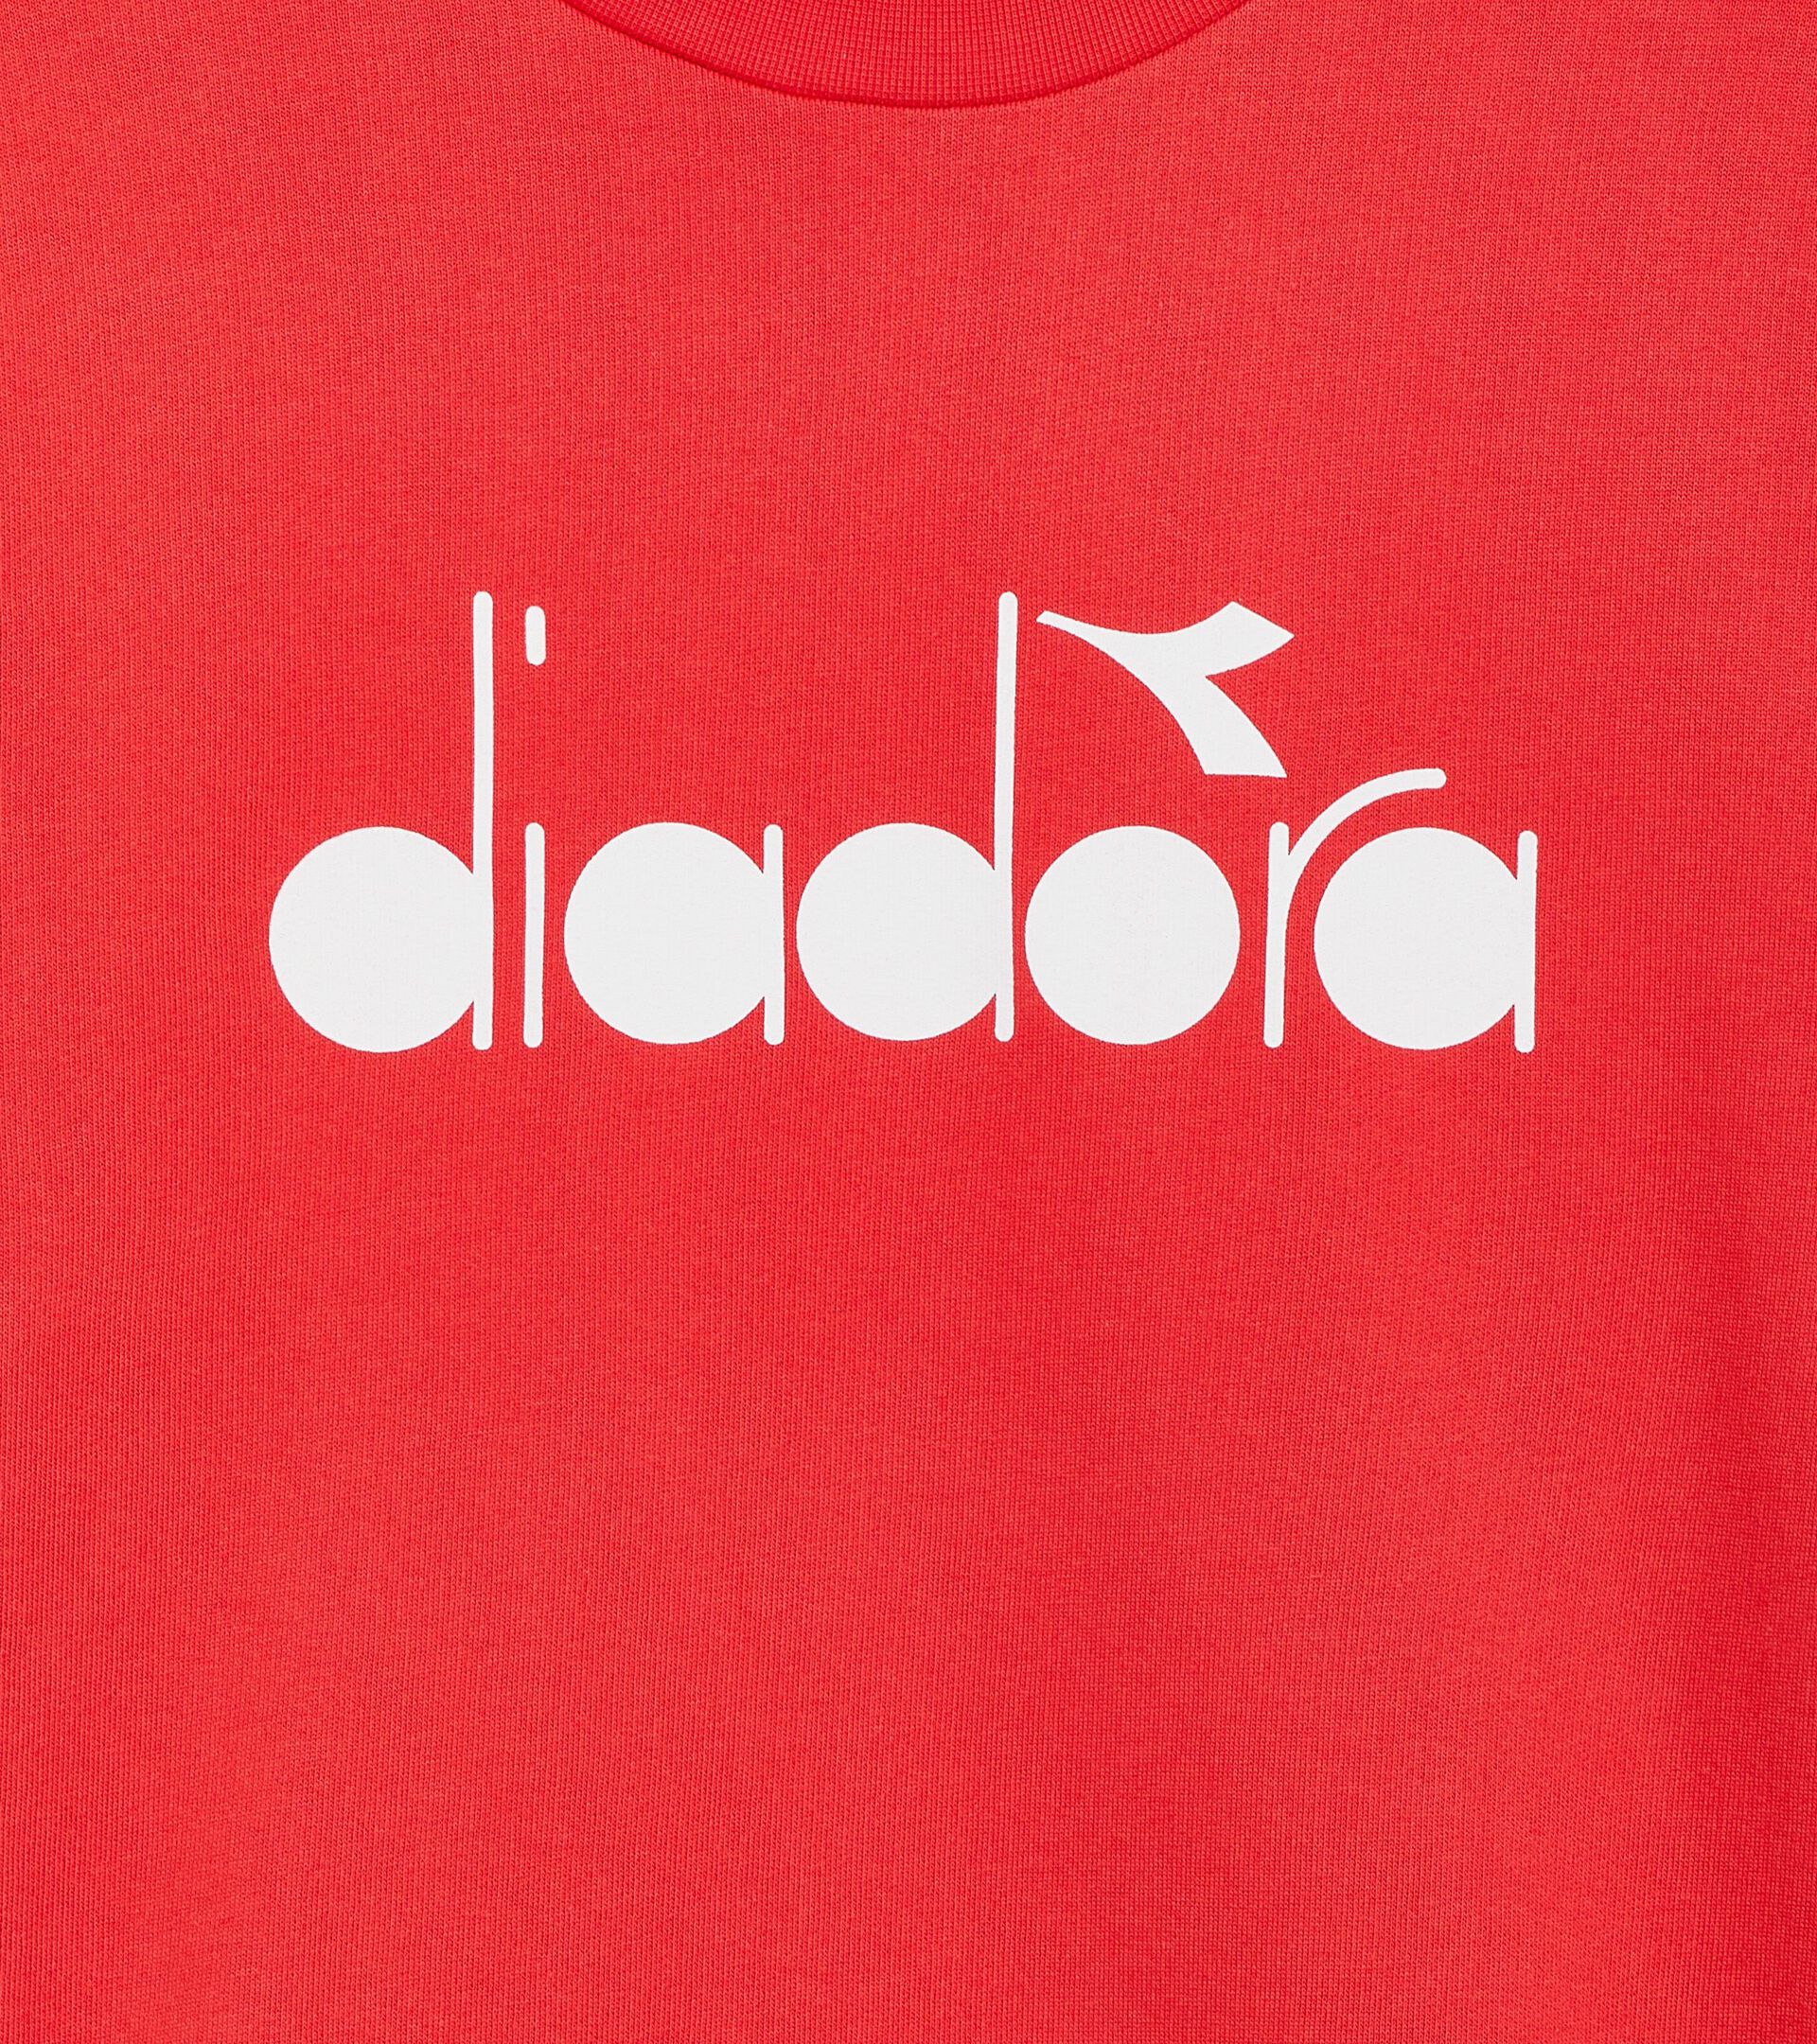 Sportliches Sweatshirt - Made in Italy - Gender Neutral SWEATSHIRT CREW LOGO BITTERSUESS ROT - Diadora